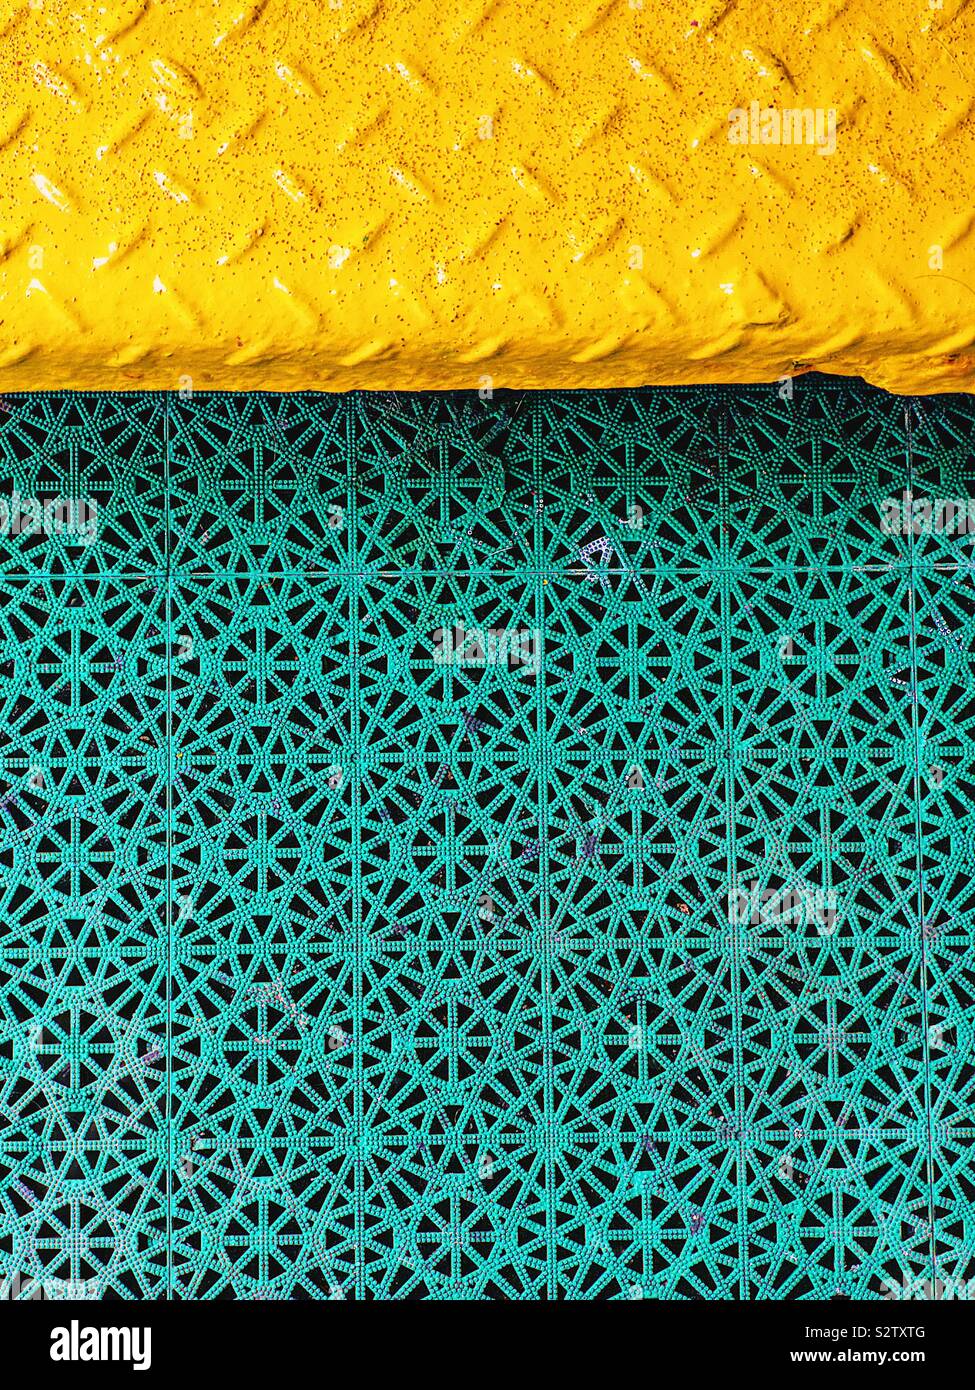 Le métal jaune texturé à motifs répétitifs et swap flooring Banque D'Images